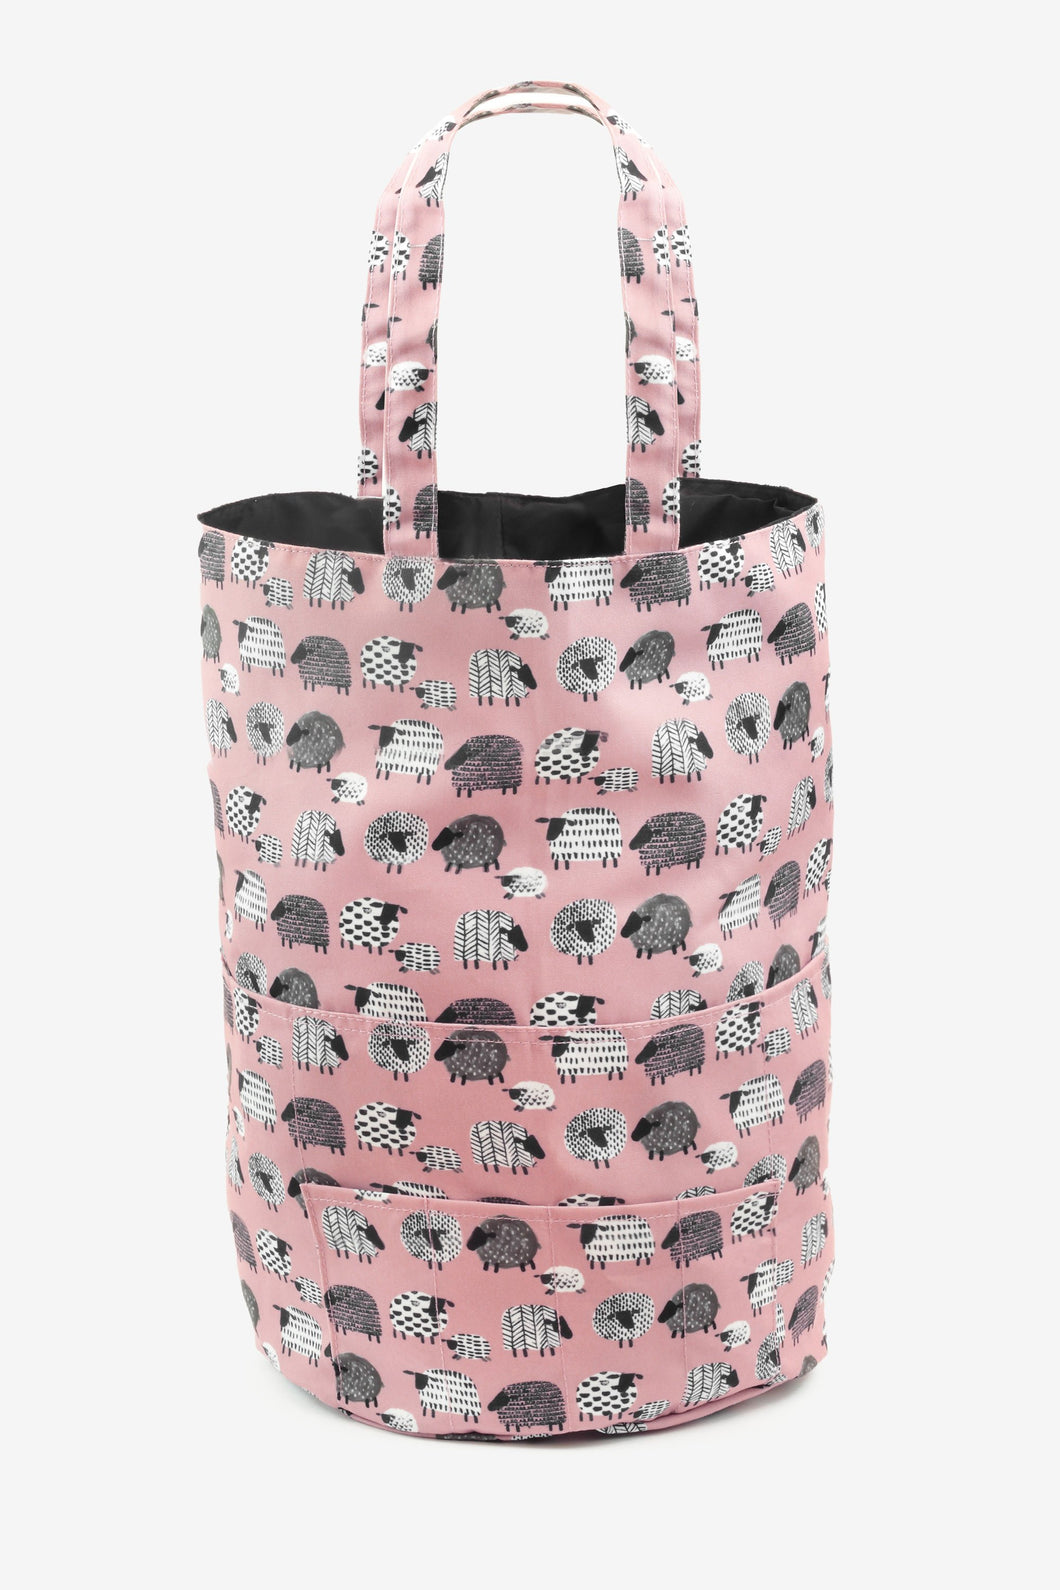 Sheep Round Storage Bag Pink